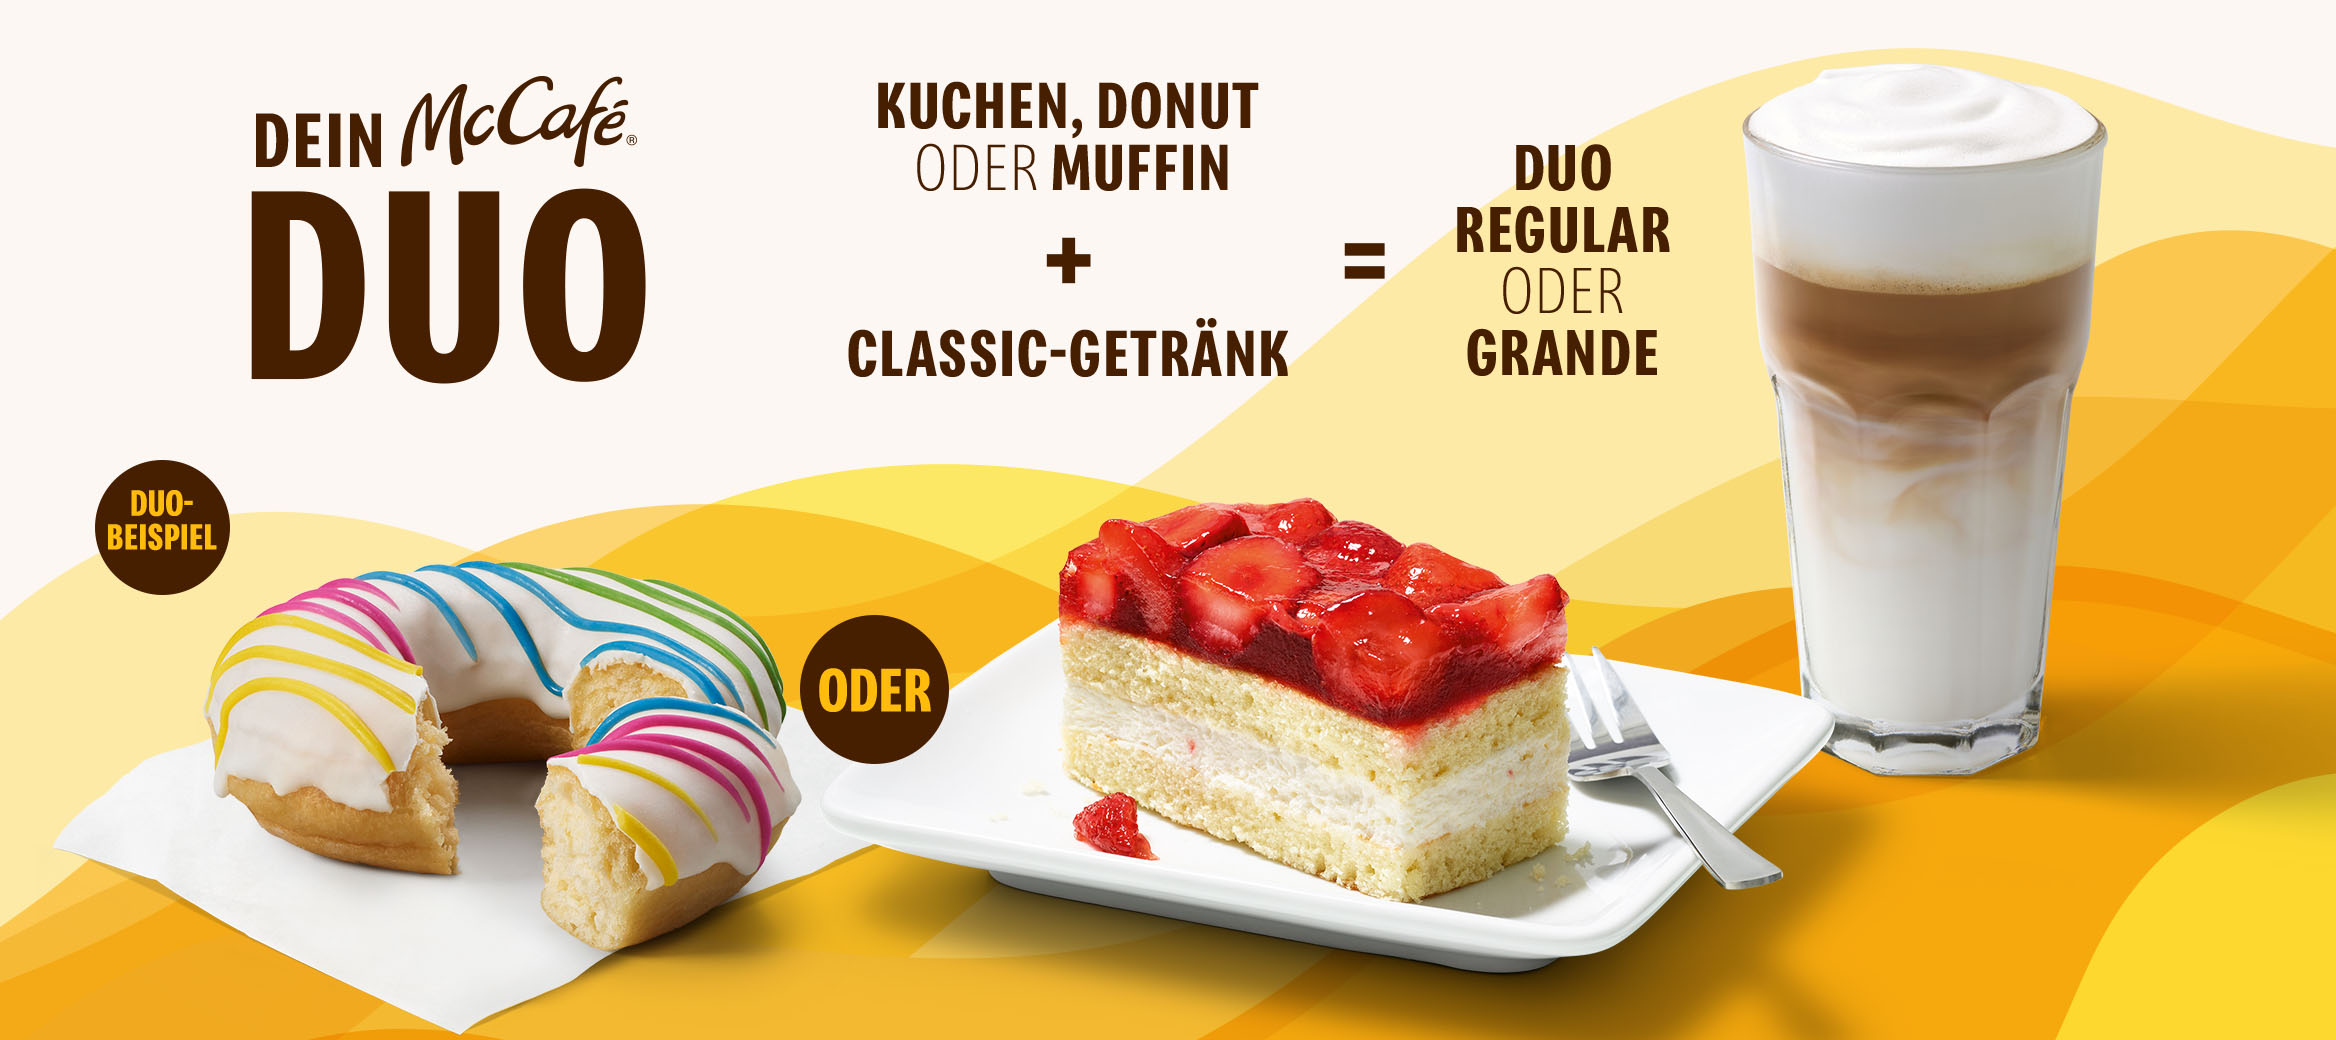 Mechanik des McCafé® DUOs. Kuchen oder Donut oder Muffin plus Classic-Getränk sind dein McCafé® DUO. Im Vordergrund ein Rainbow Donut und ein Erdbeerkuchen sowie ein Latte Macchiato.